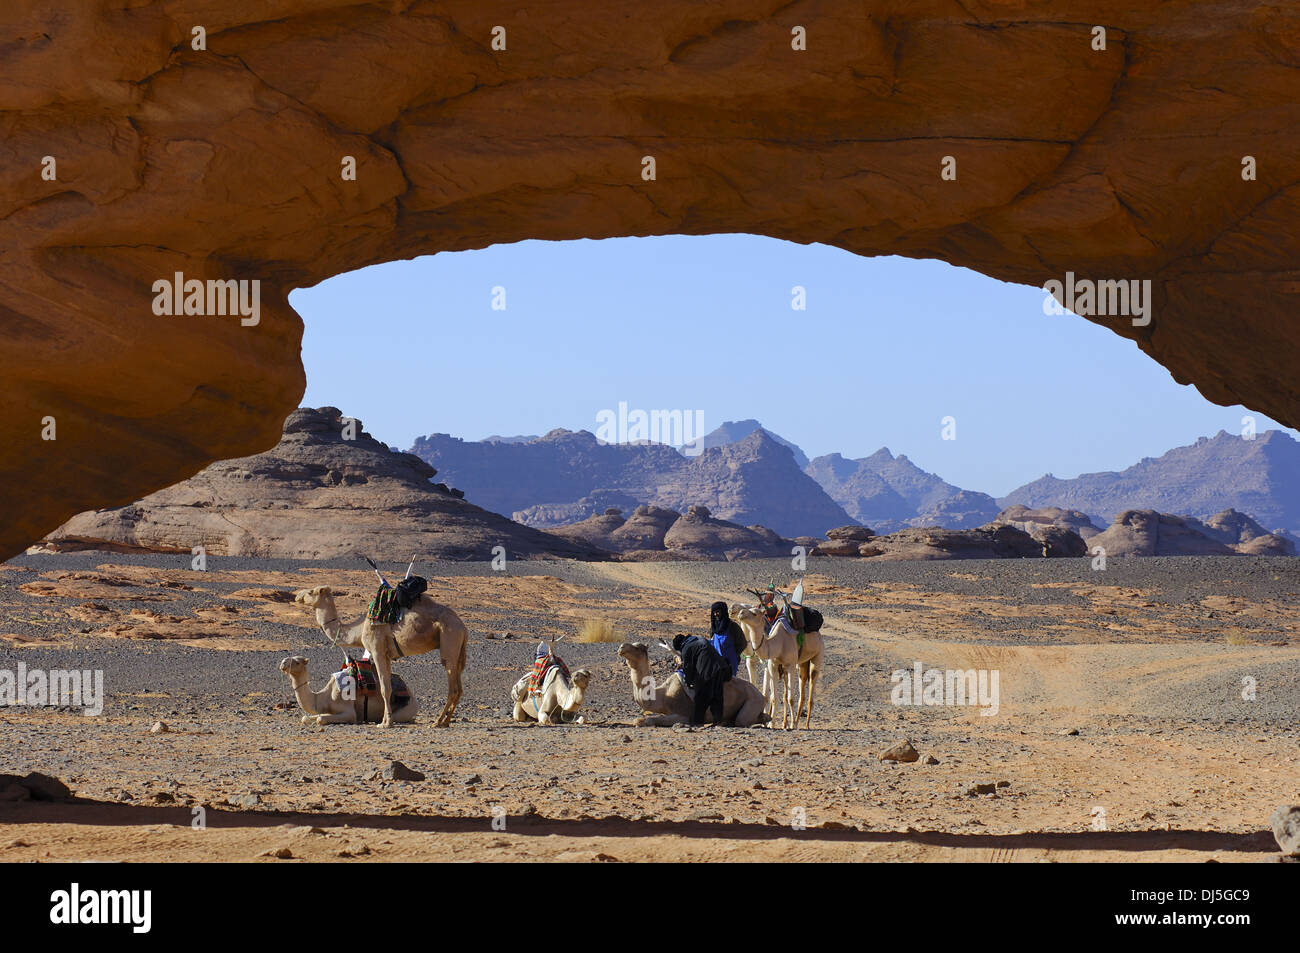 Camel caravan at a rock arch, Sahara desert Stock Photo